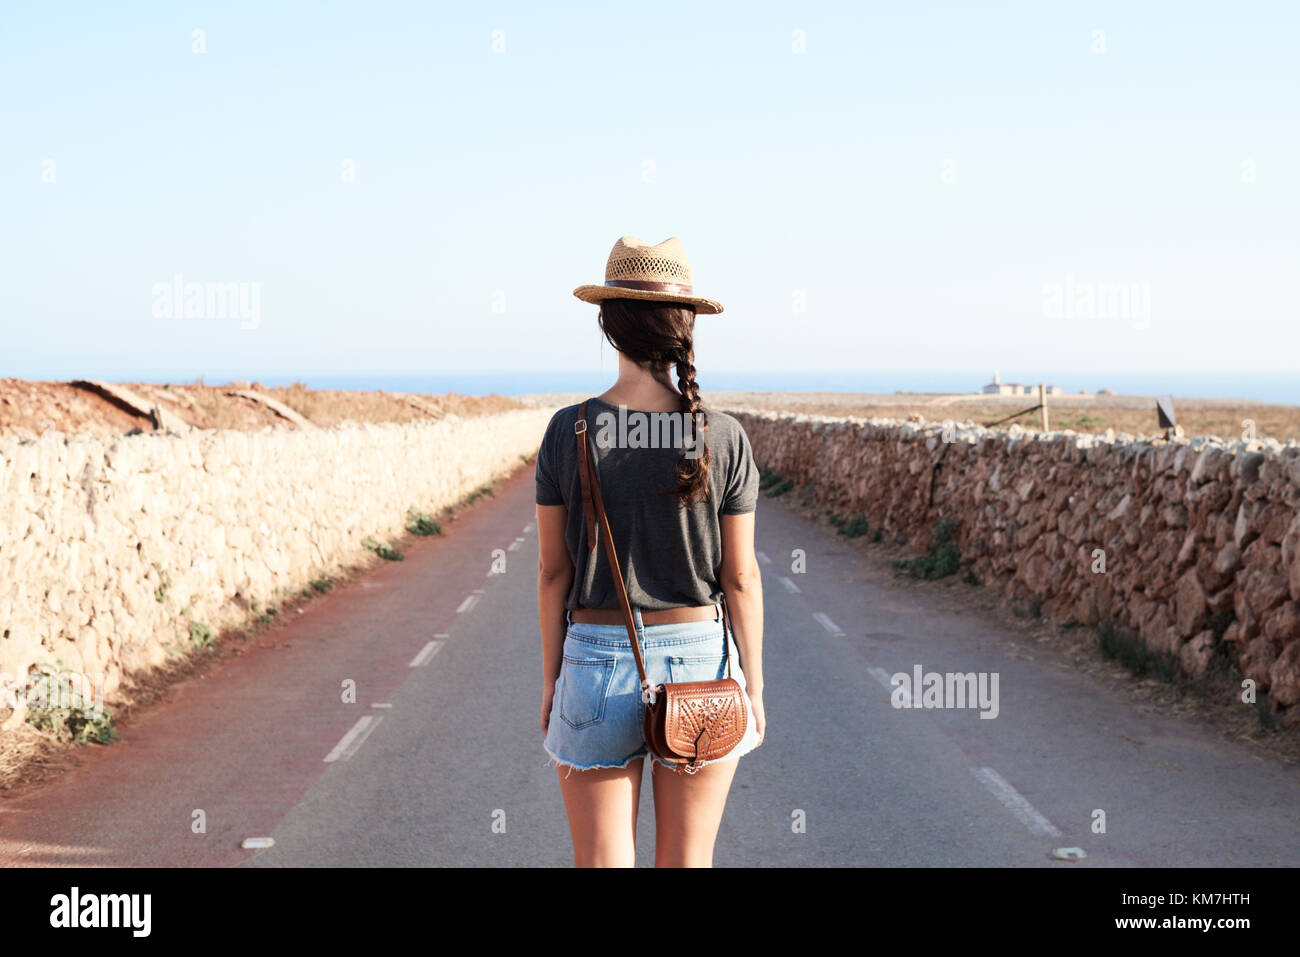 Menorca, Espagne, solo traveler Vue de derrière dans un vide, d'un phare, solo traveler Banque D'Images